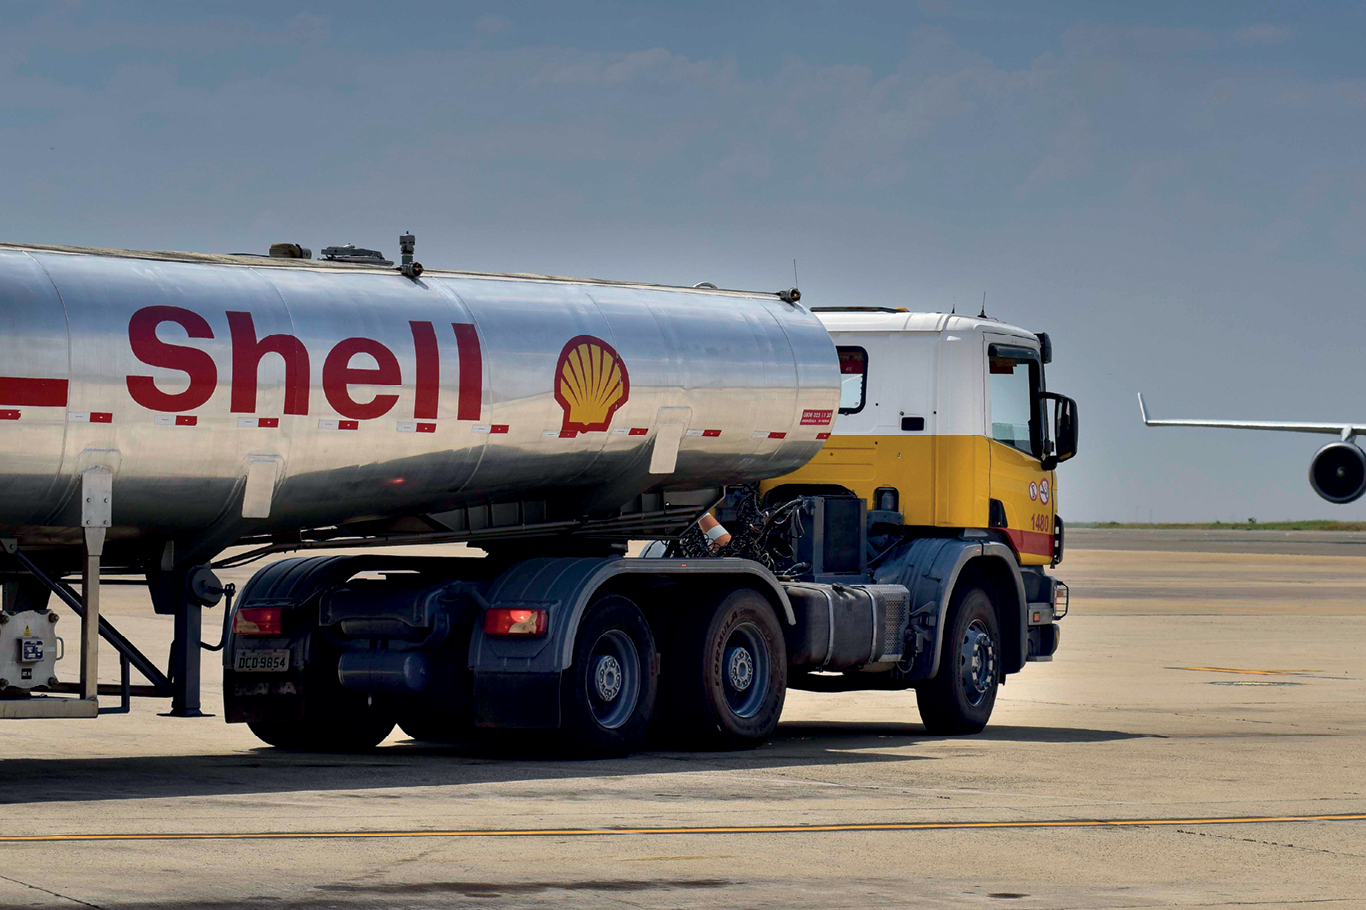 Caminhão de abastecimento com a marca Shell.